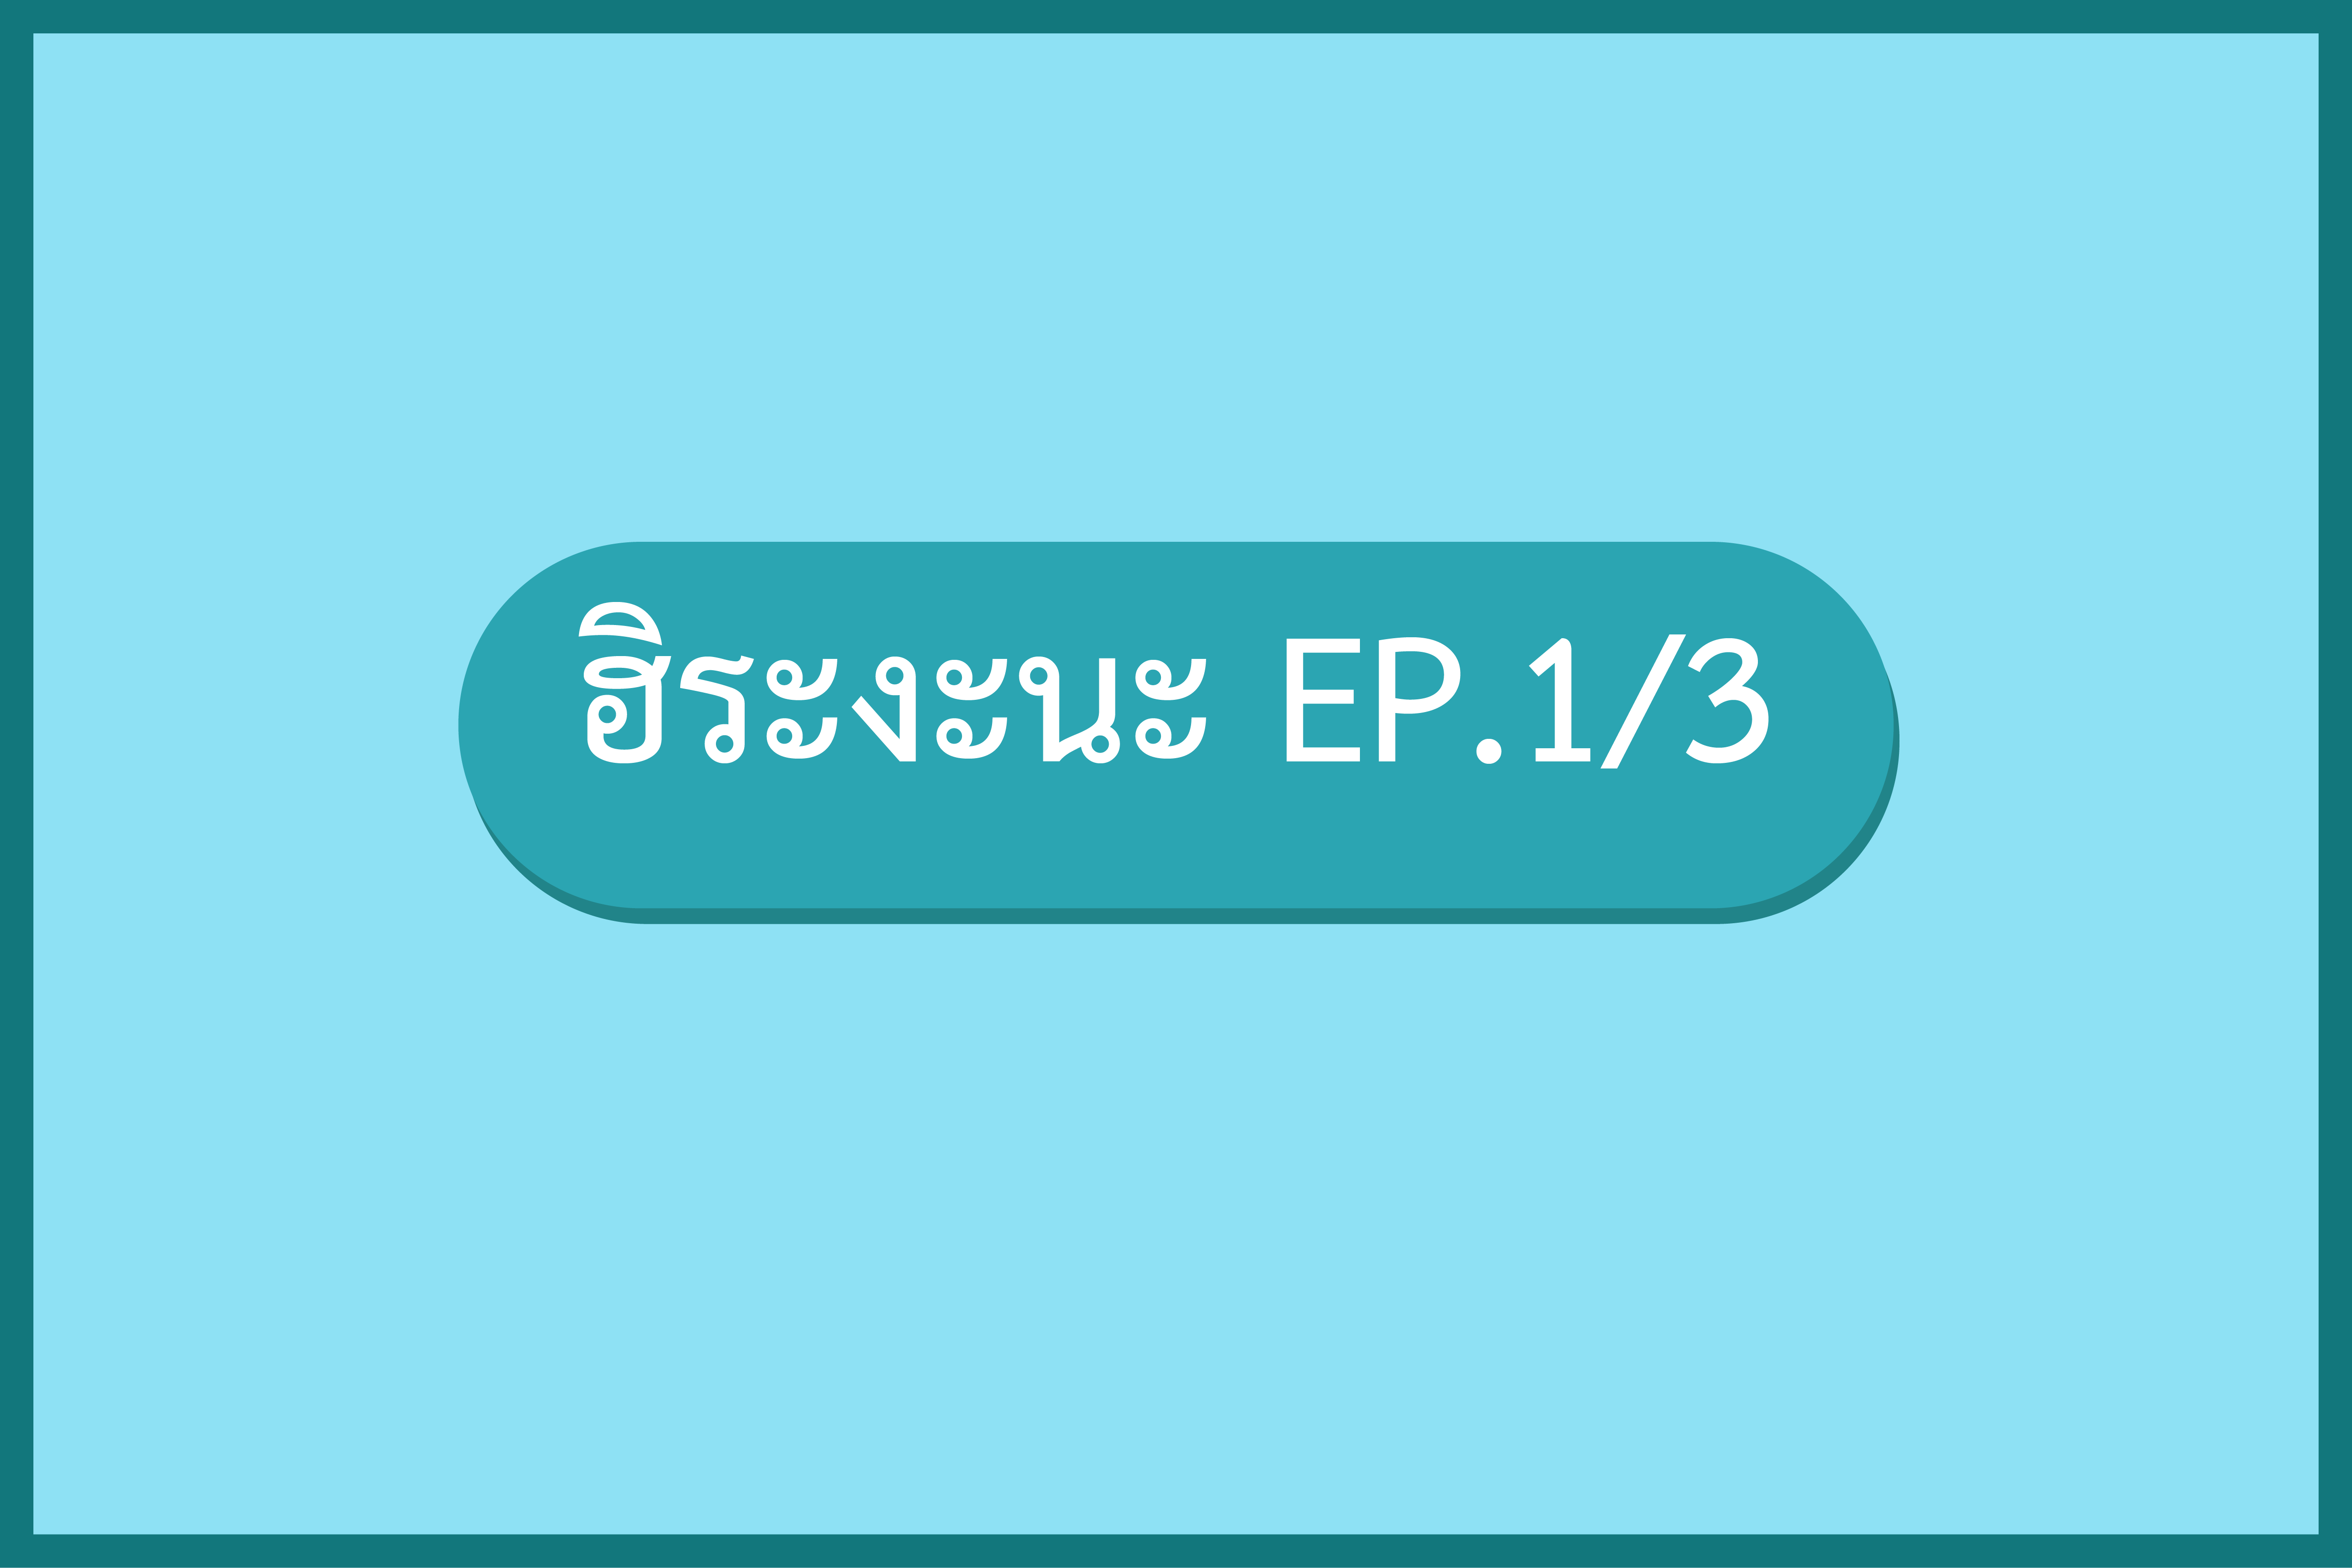 มินนะโนะนิฮงโกะ 1 EP.2 ฮิระงะนะ (1/3)